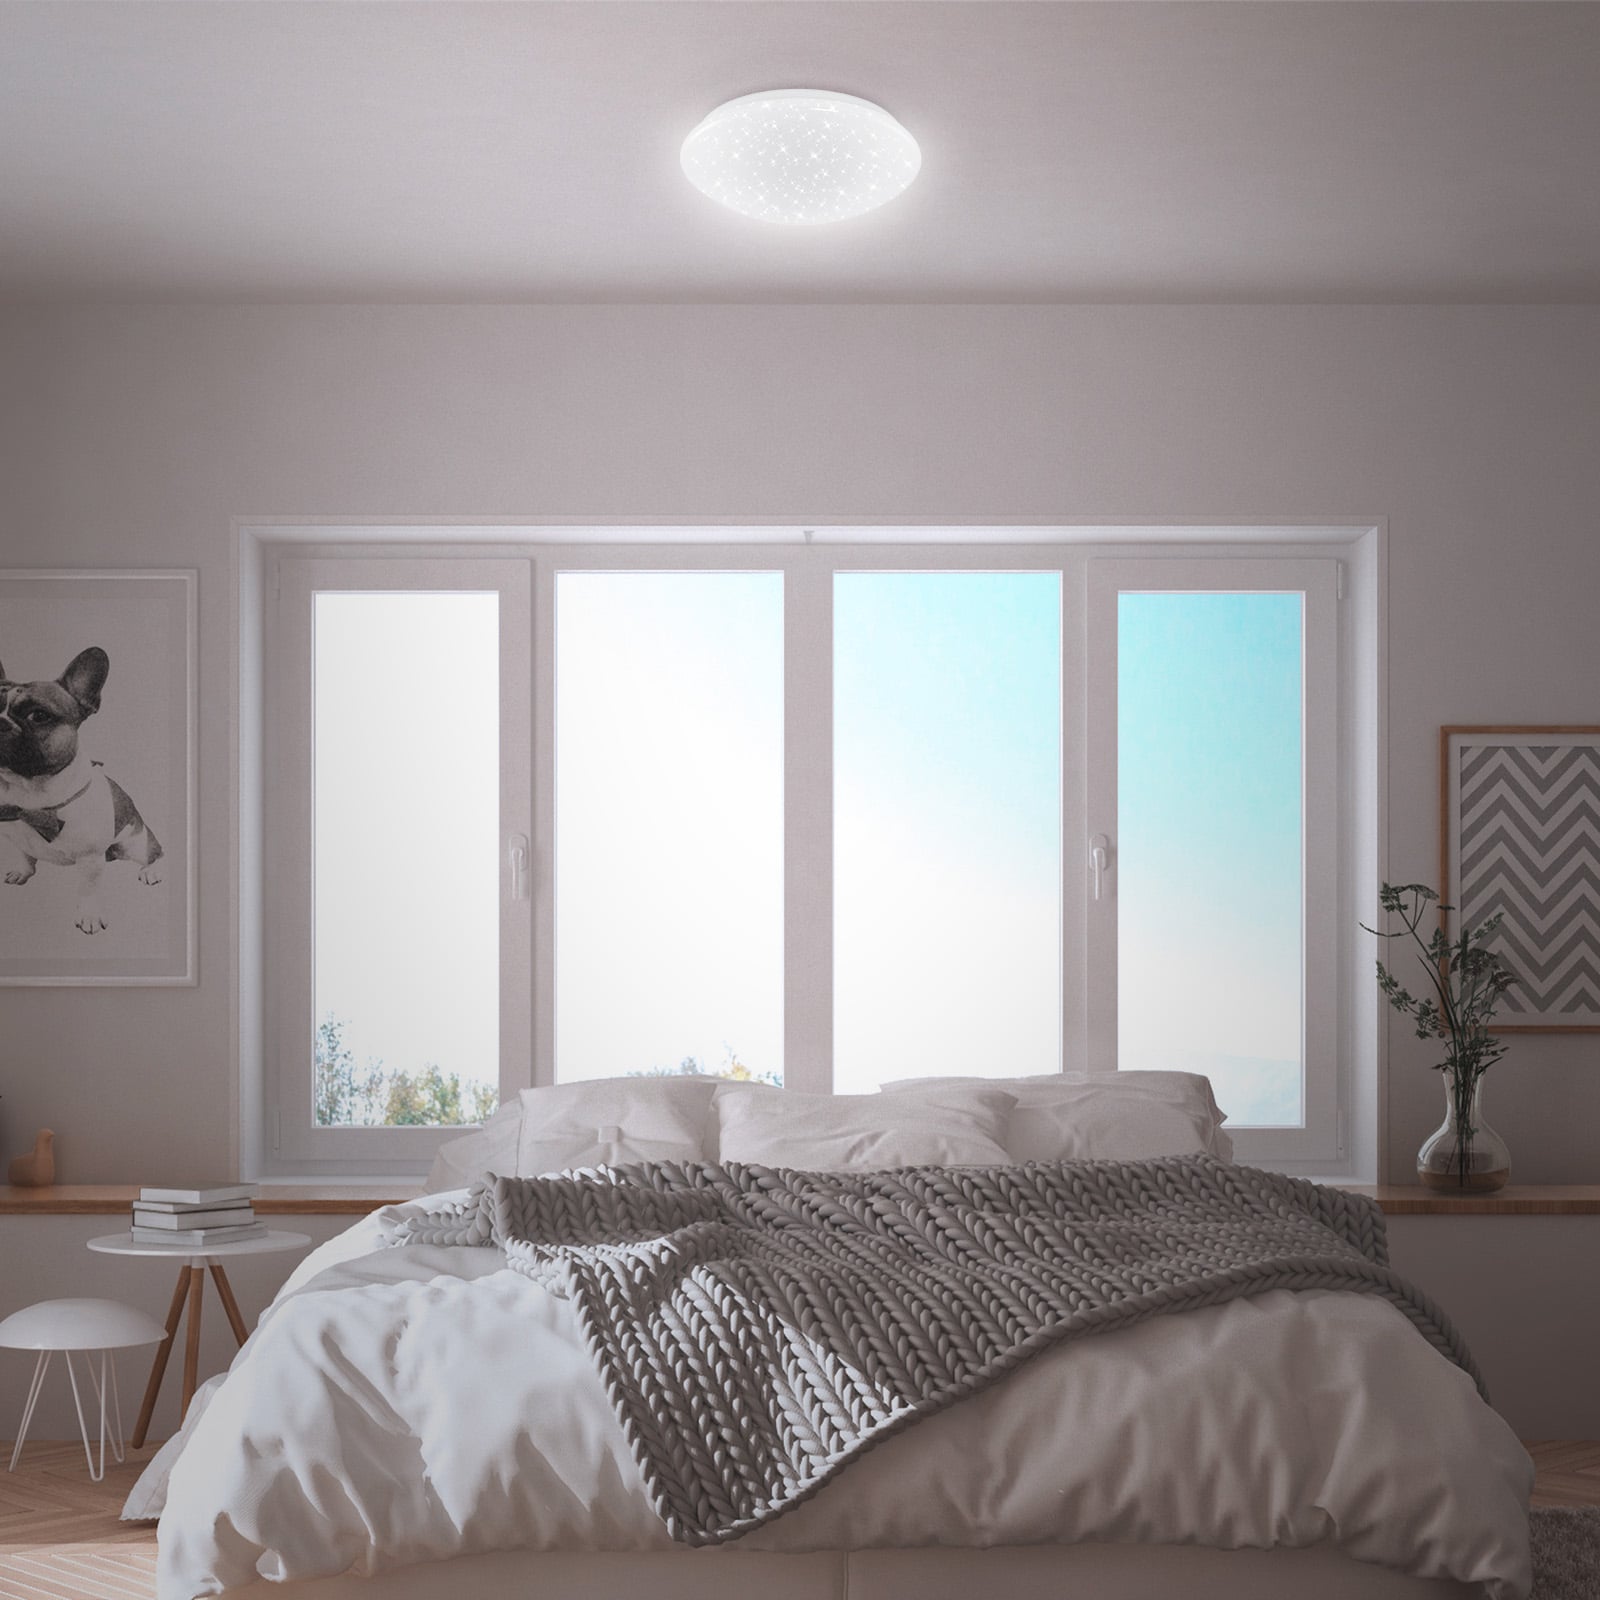 LED Deckenleuchte mit Sternenhimmel Deckenlampe Schlafzimmer Modern  Schlafzimmerlampe Decke LED, klarer Rand, 22W 1400Lm warmweiß, DxH 44x9 cm